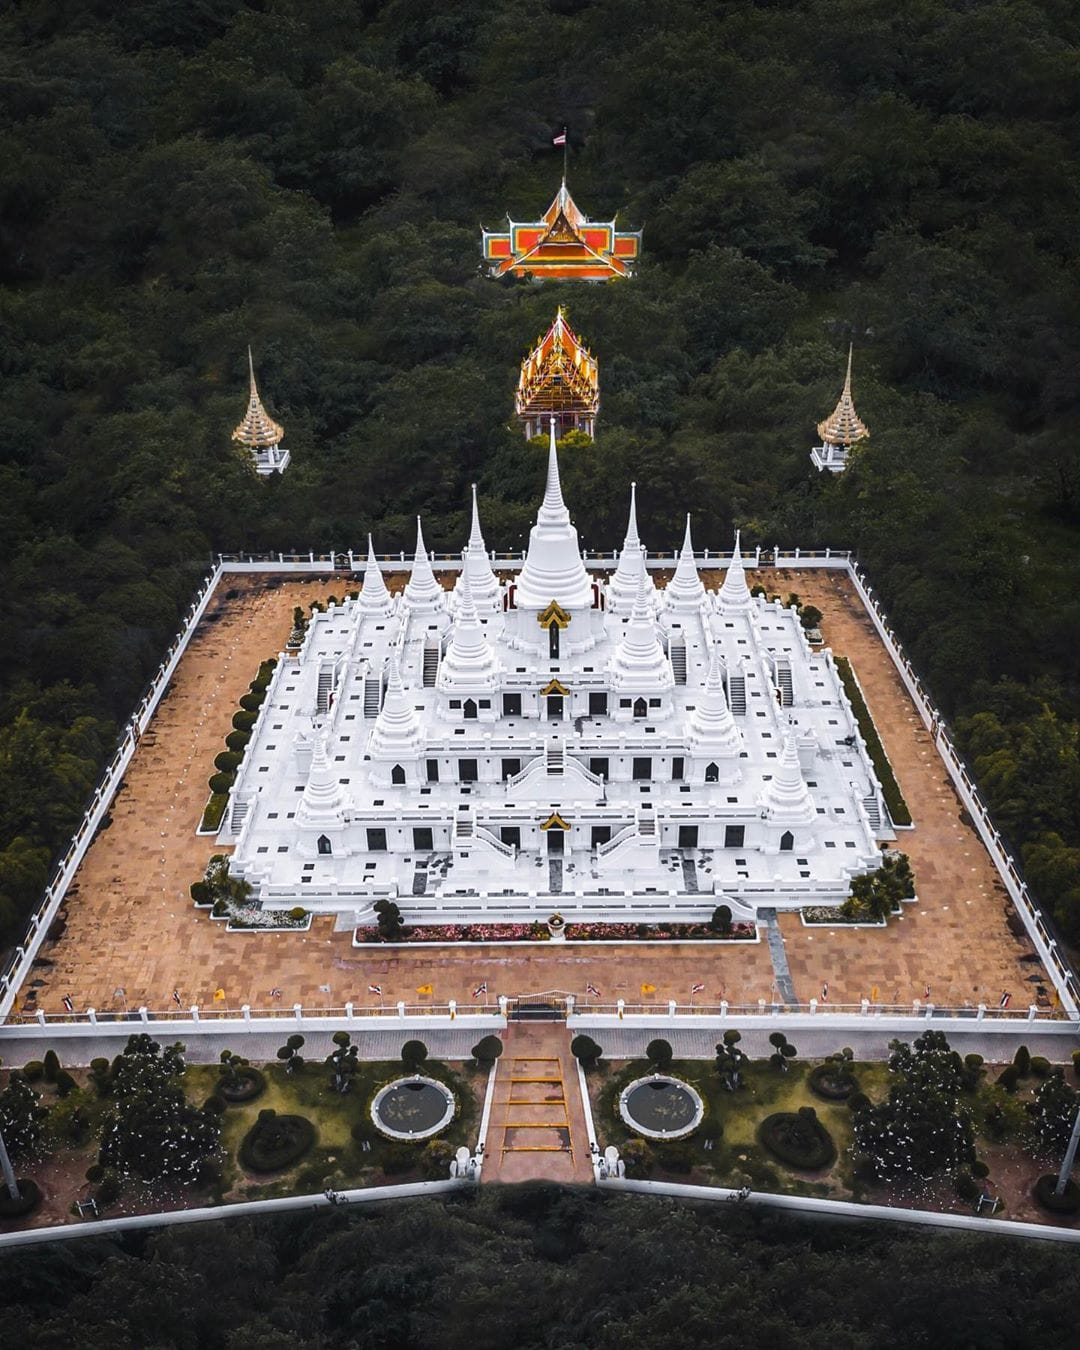 18 снимков удивительной архитектуры восточных храмов, которые восхищают своей оригинальностью 68